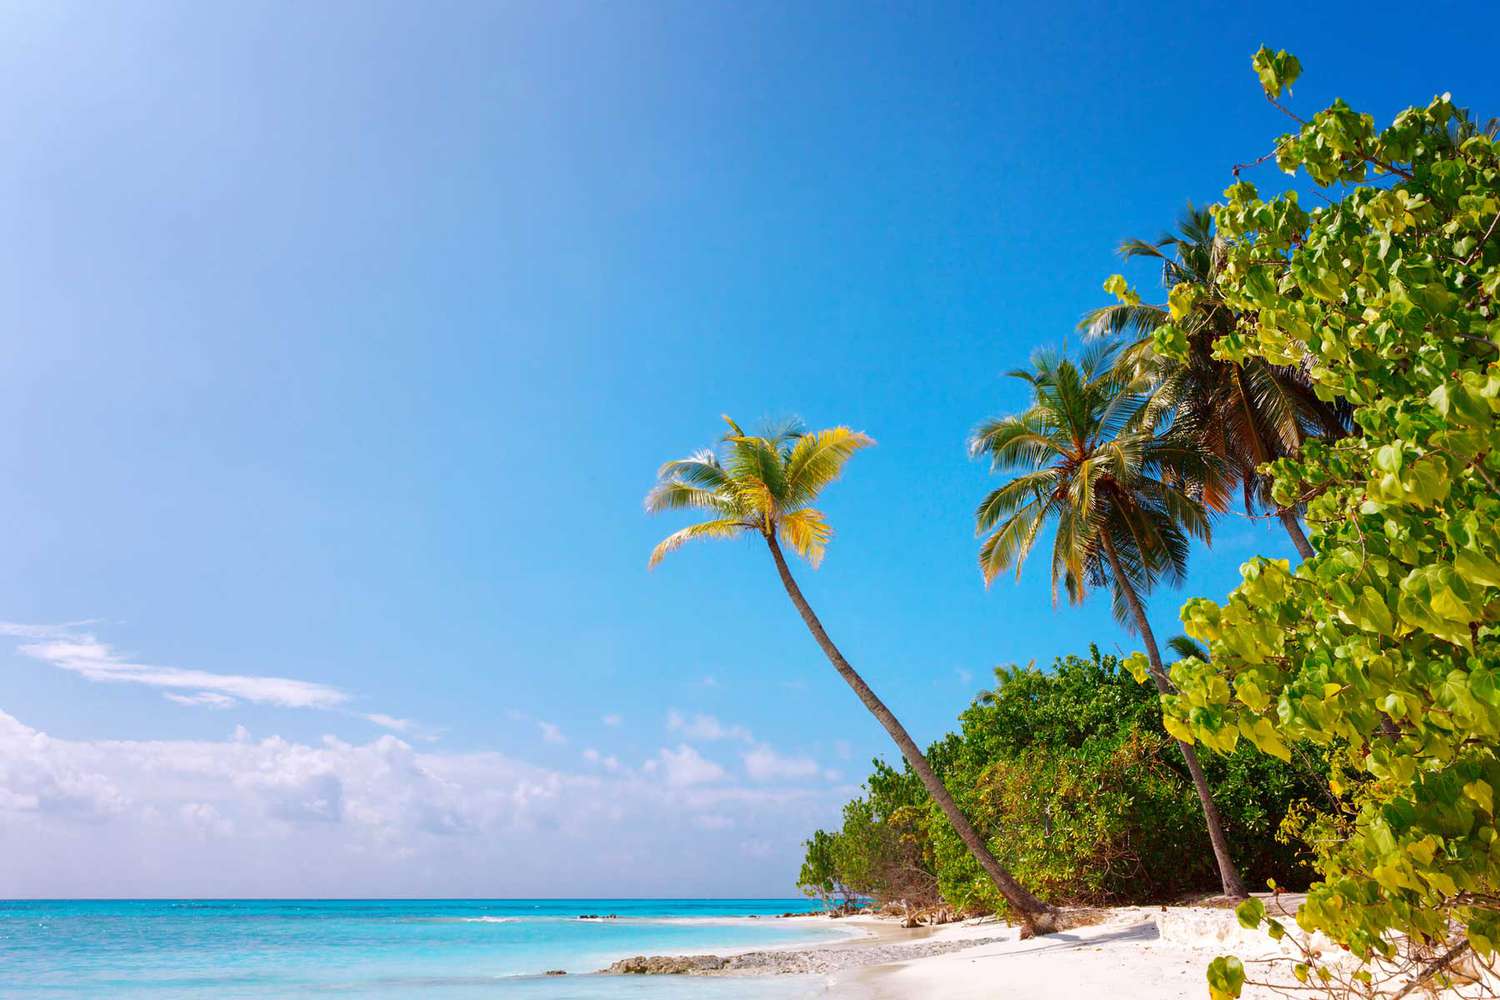 Plage de l'île des Maldives Fulhadhoo avec plage de sable blanc idyllique parfaite et mer et palmier courbe